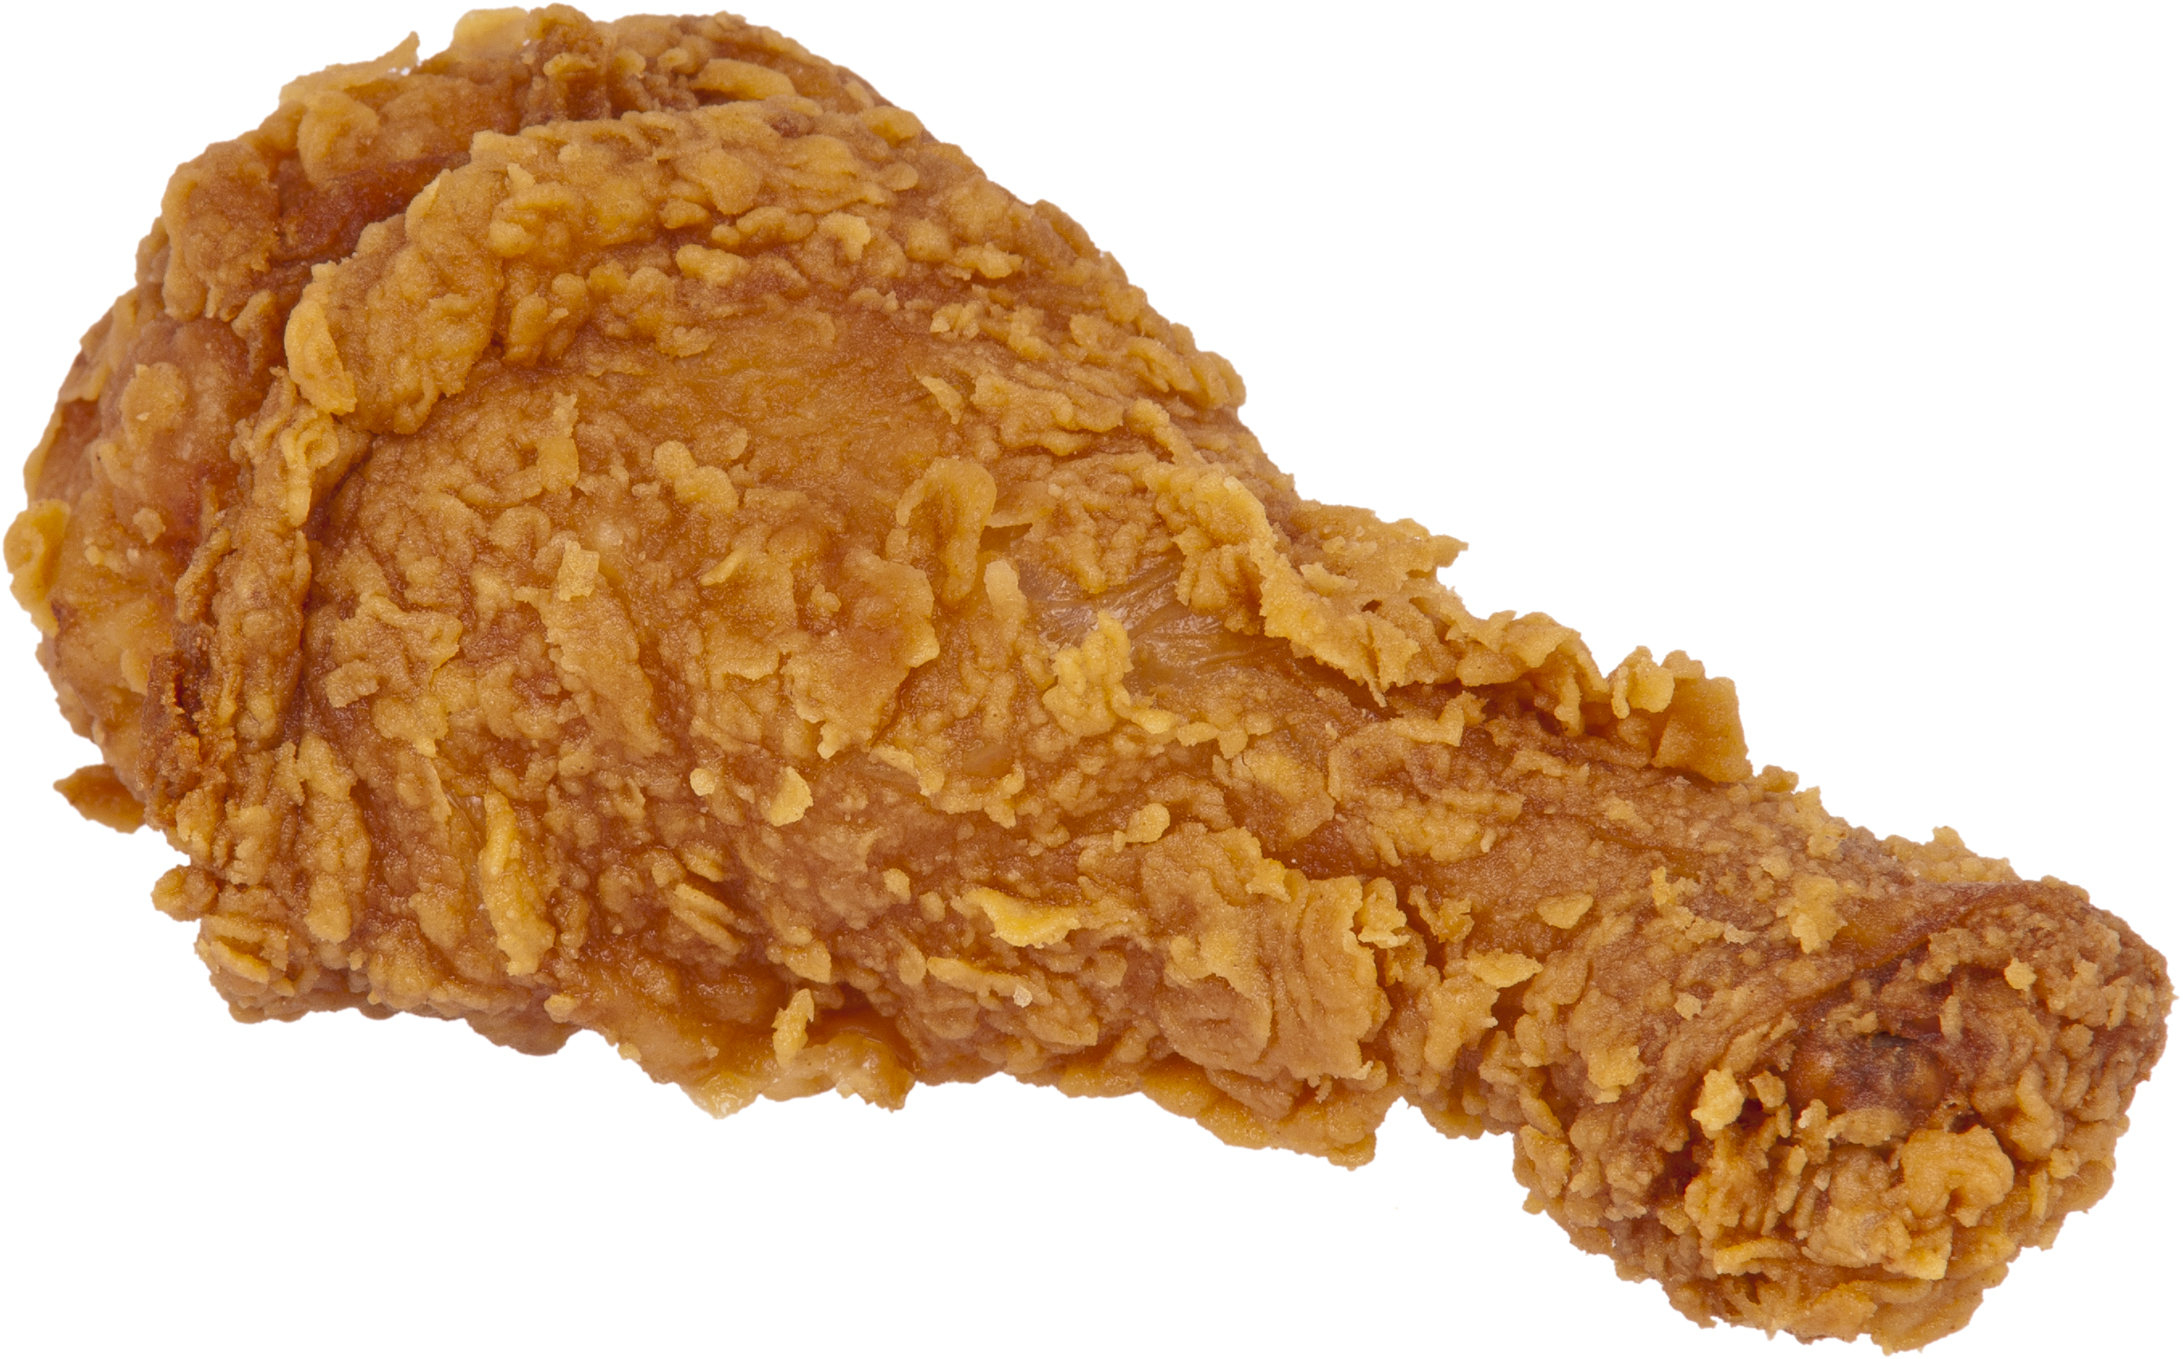 File:Fried-Chicken-Leg.jpg - Wikipedia